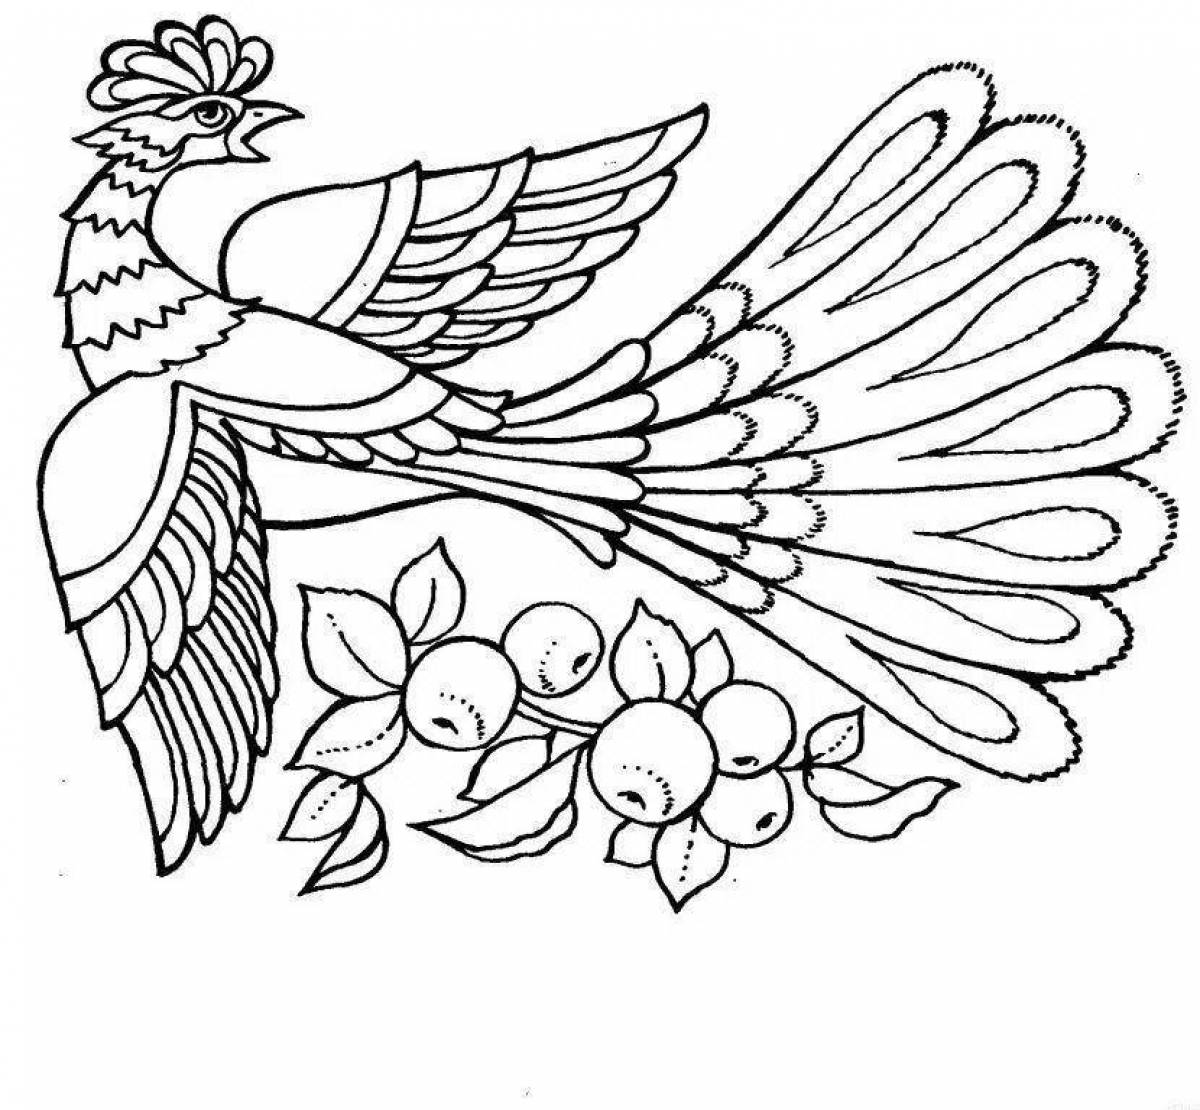 Exquisite fairy bird coloring book